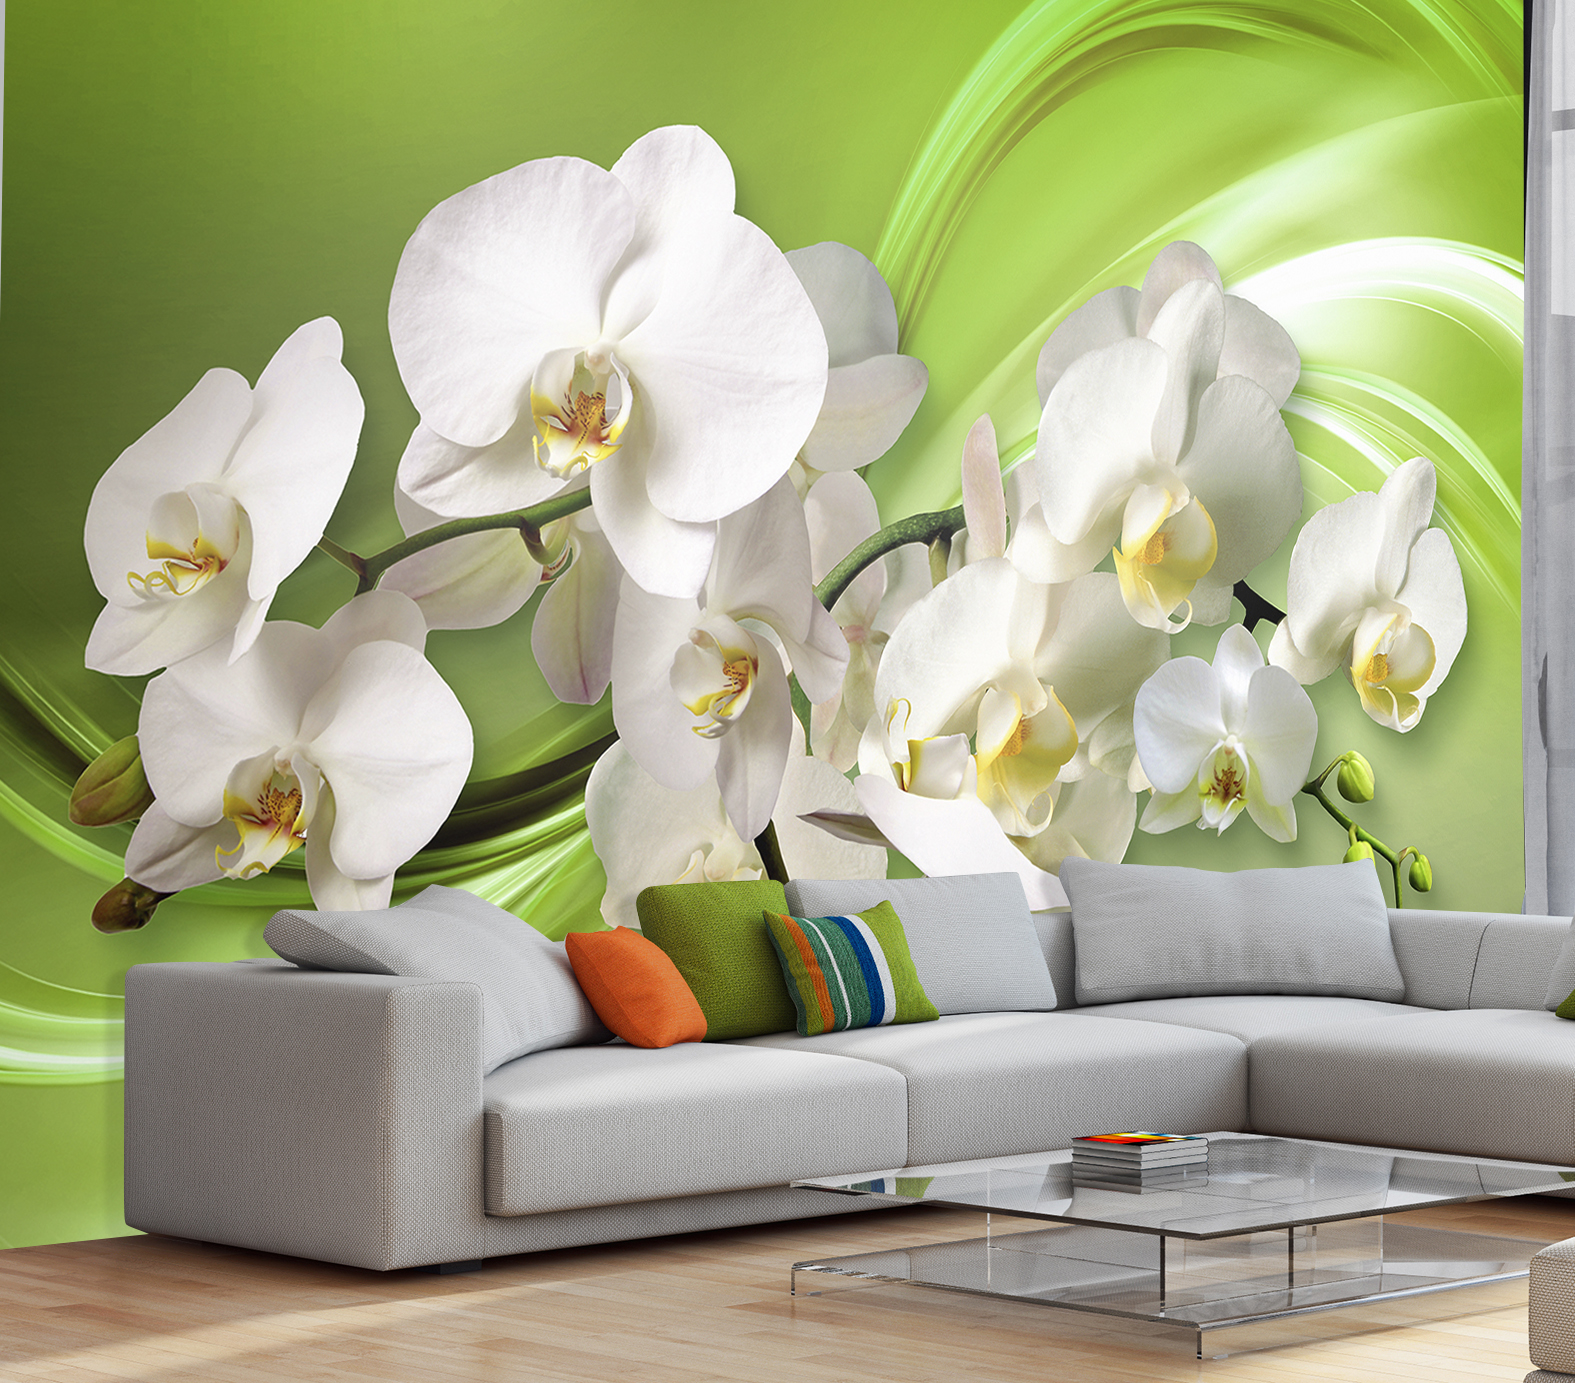 Фотообои Photostena 3D орхидеи на зеленом фоне 4,08 x 2,7 м фотообои photostena 3d арка с ветками орхидеи 1 62 x 2 5 м